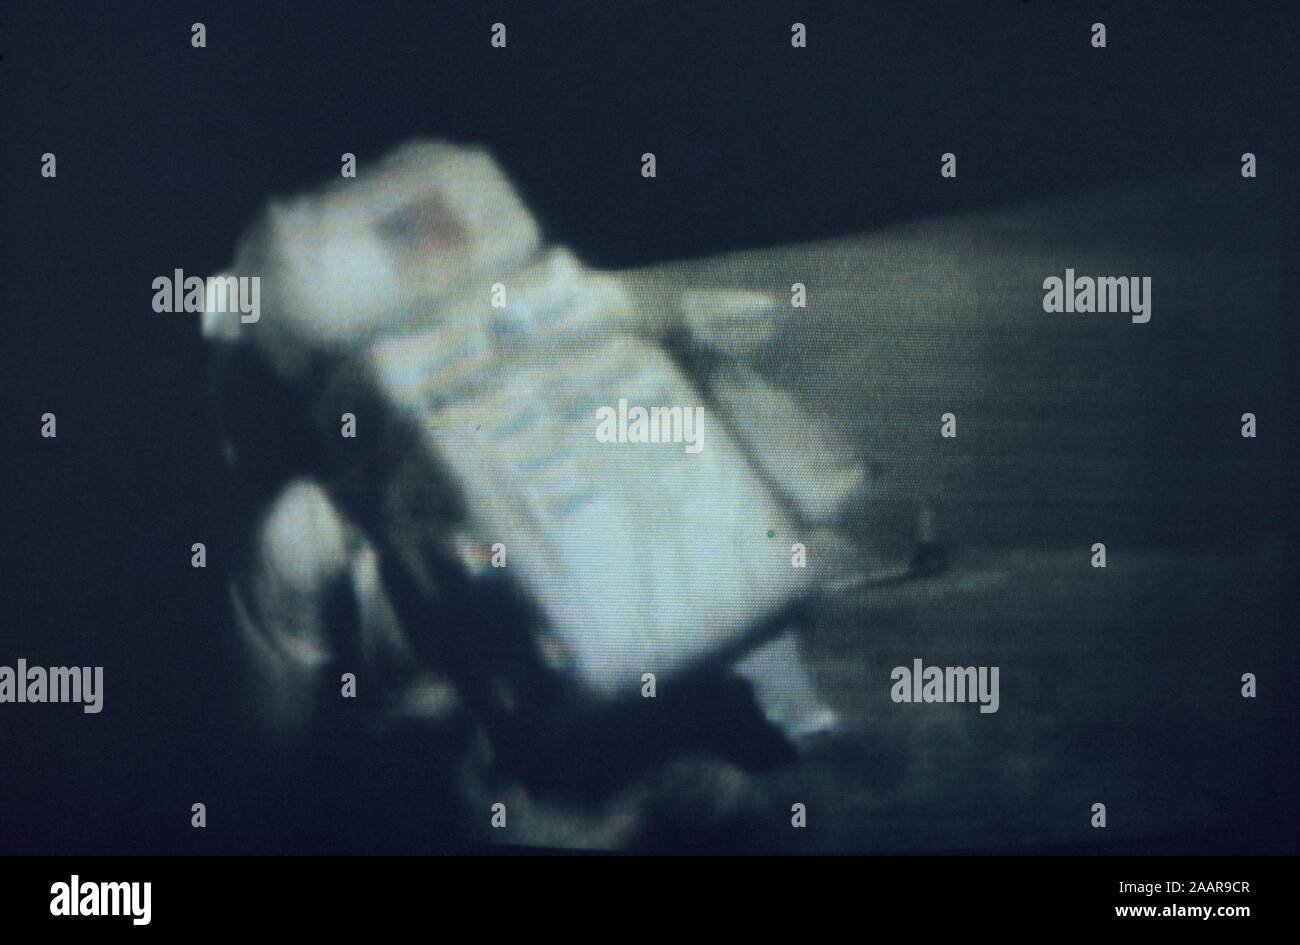 Teleclip - Buzz Aldrin stolpert auf Mond Oberfläche - Apollo 11 Foto genommen während Live Broadcast/s ca. 1969-72 Stockfoto